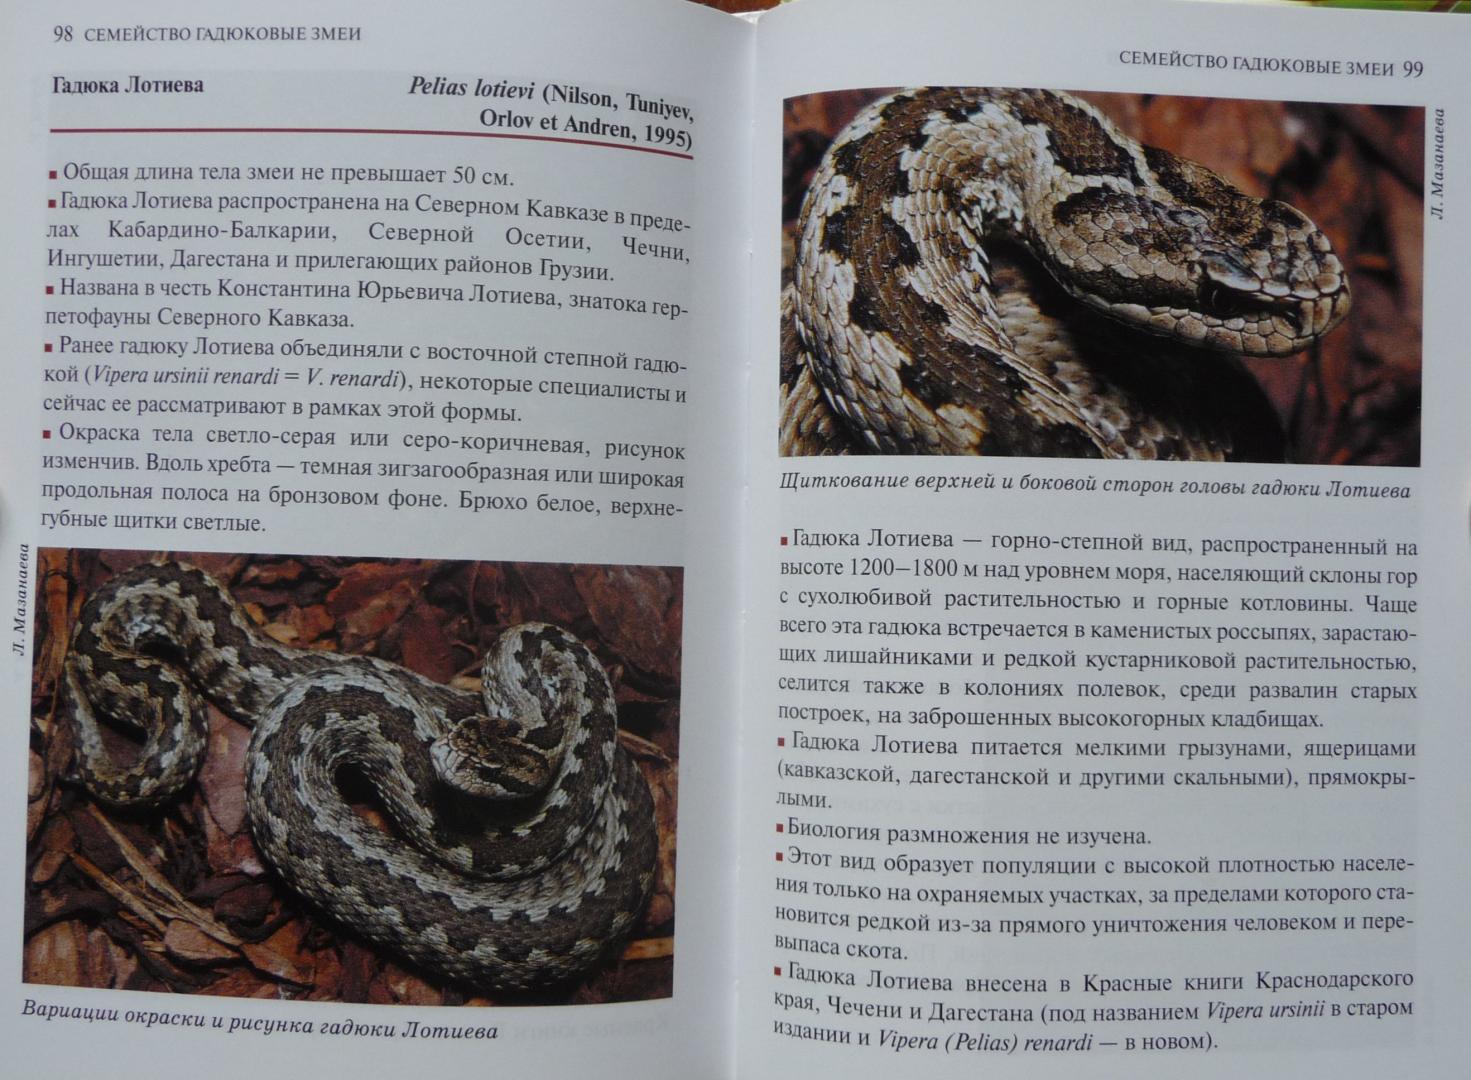 Книга про змея. Книга зелёная страницы змея. Атласная змея книга. Значение змей в природе и жизни человека.